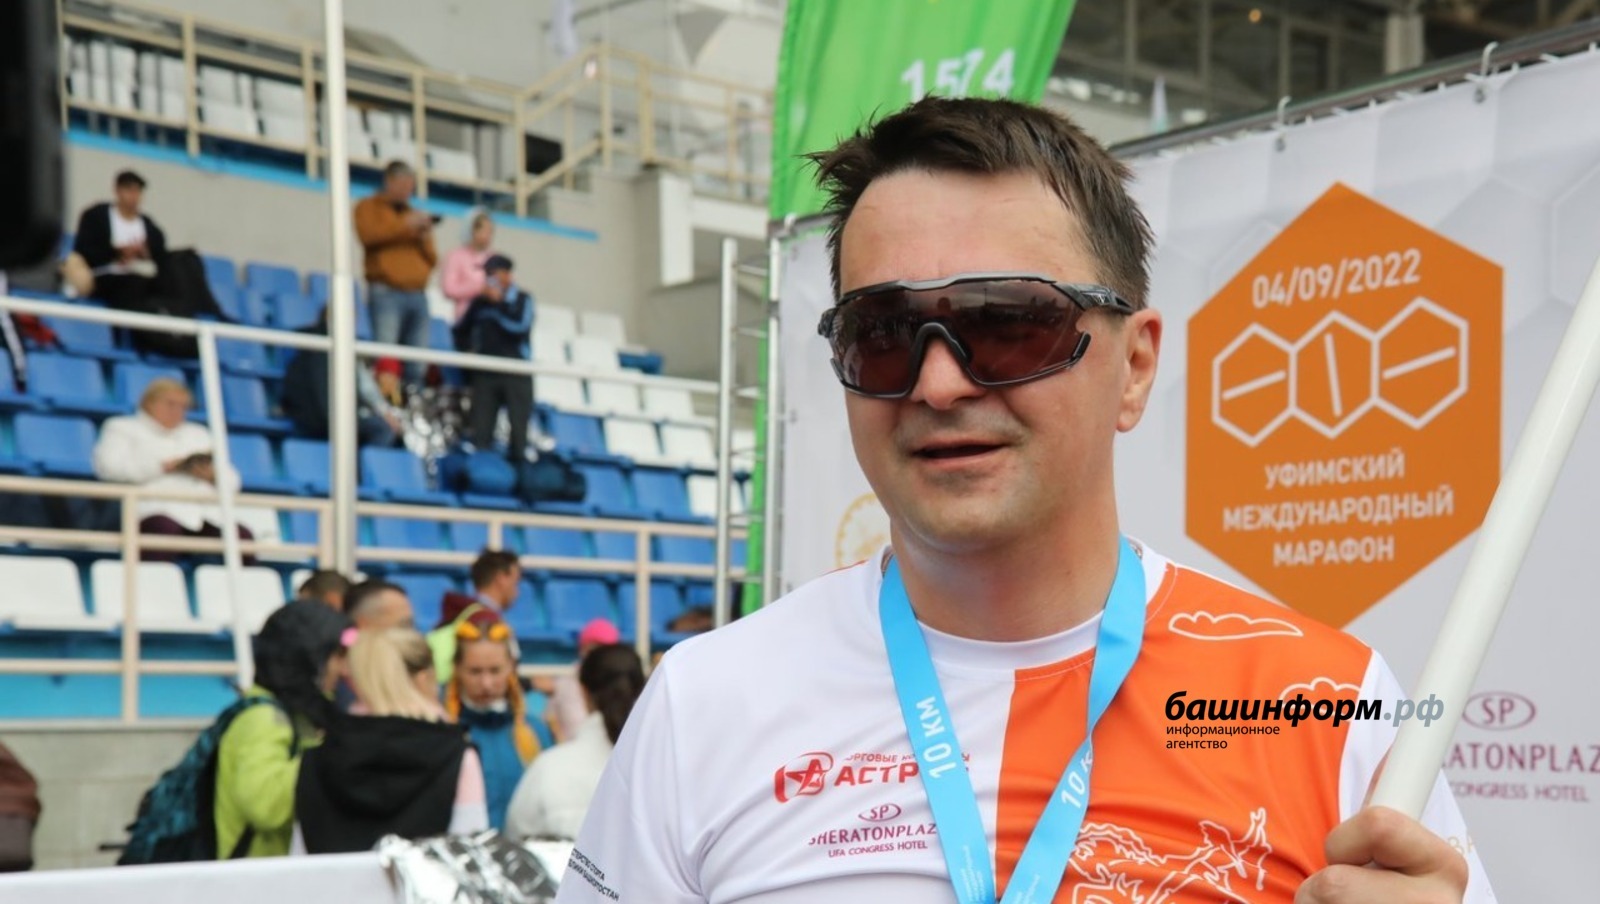 Максим Забелин участвовал в уфимском международном марафоне